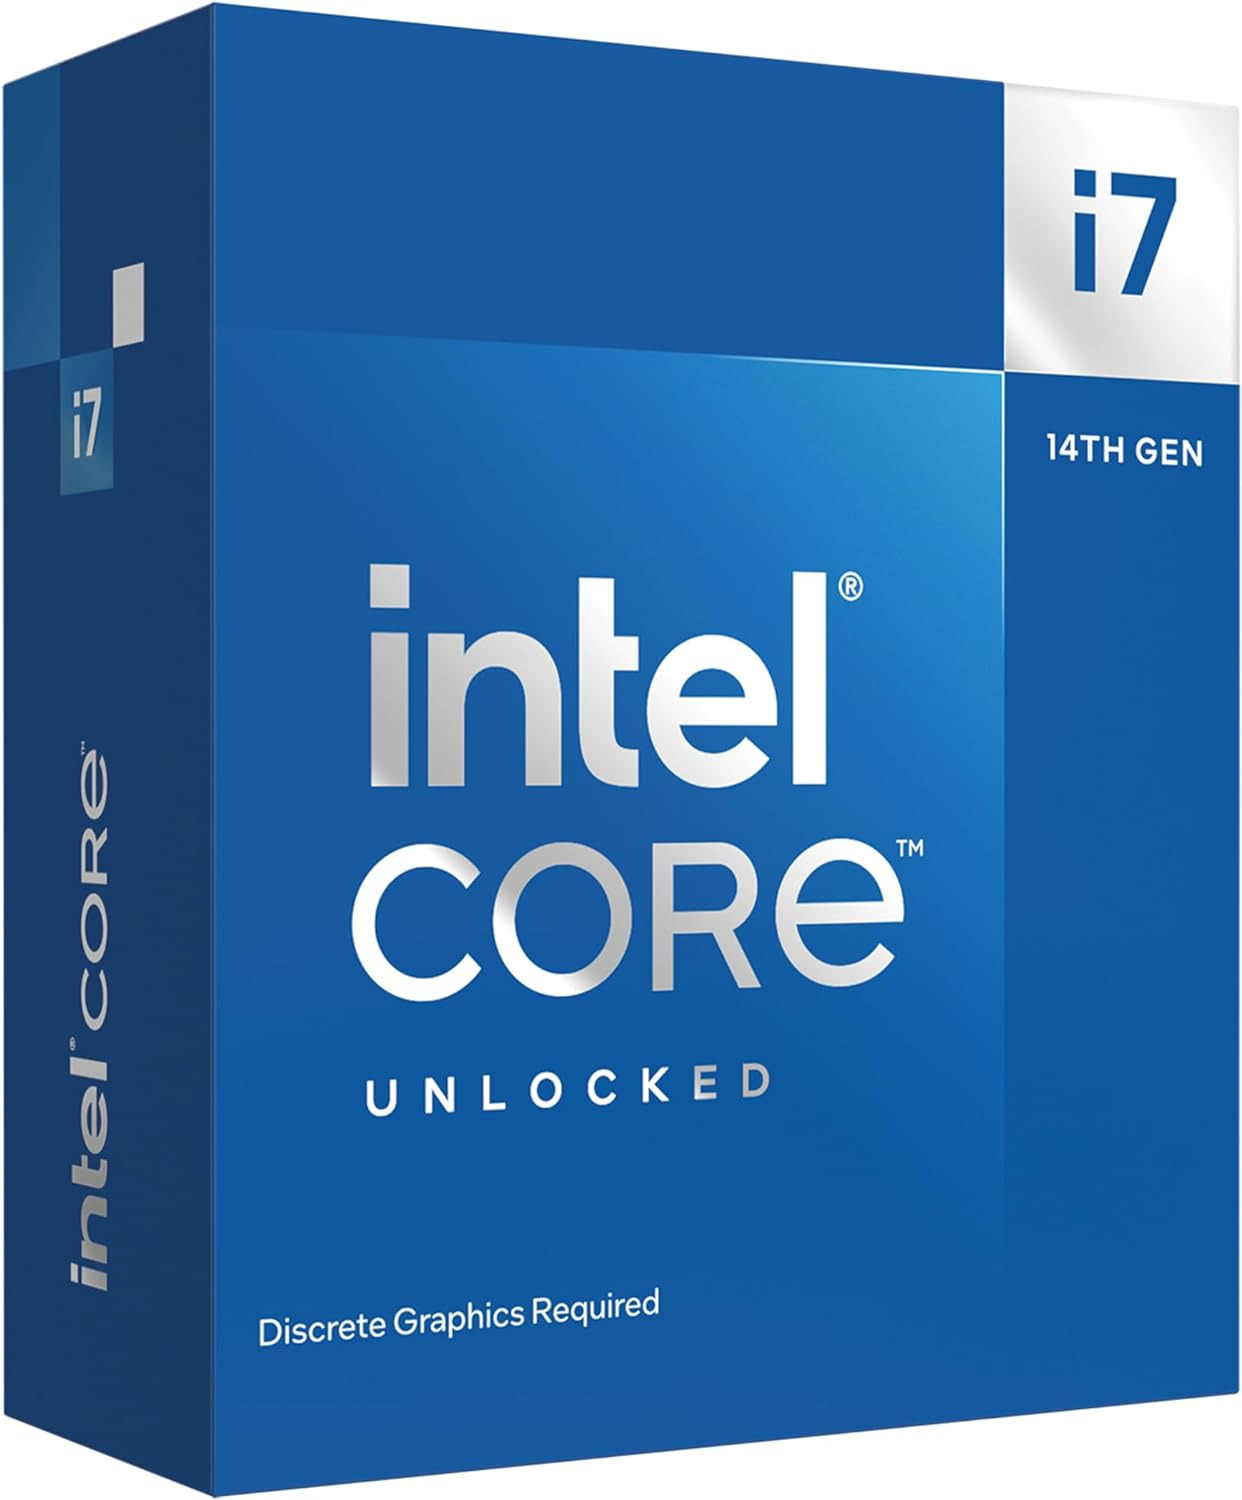 Core™ I7-14700Kf New Gaming Desktop Processor 20 Cores (8 P-Cores + 12 E-Cores)